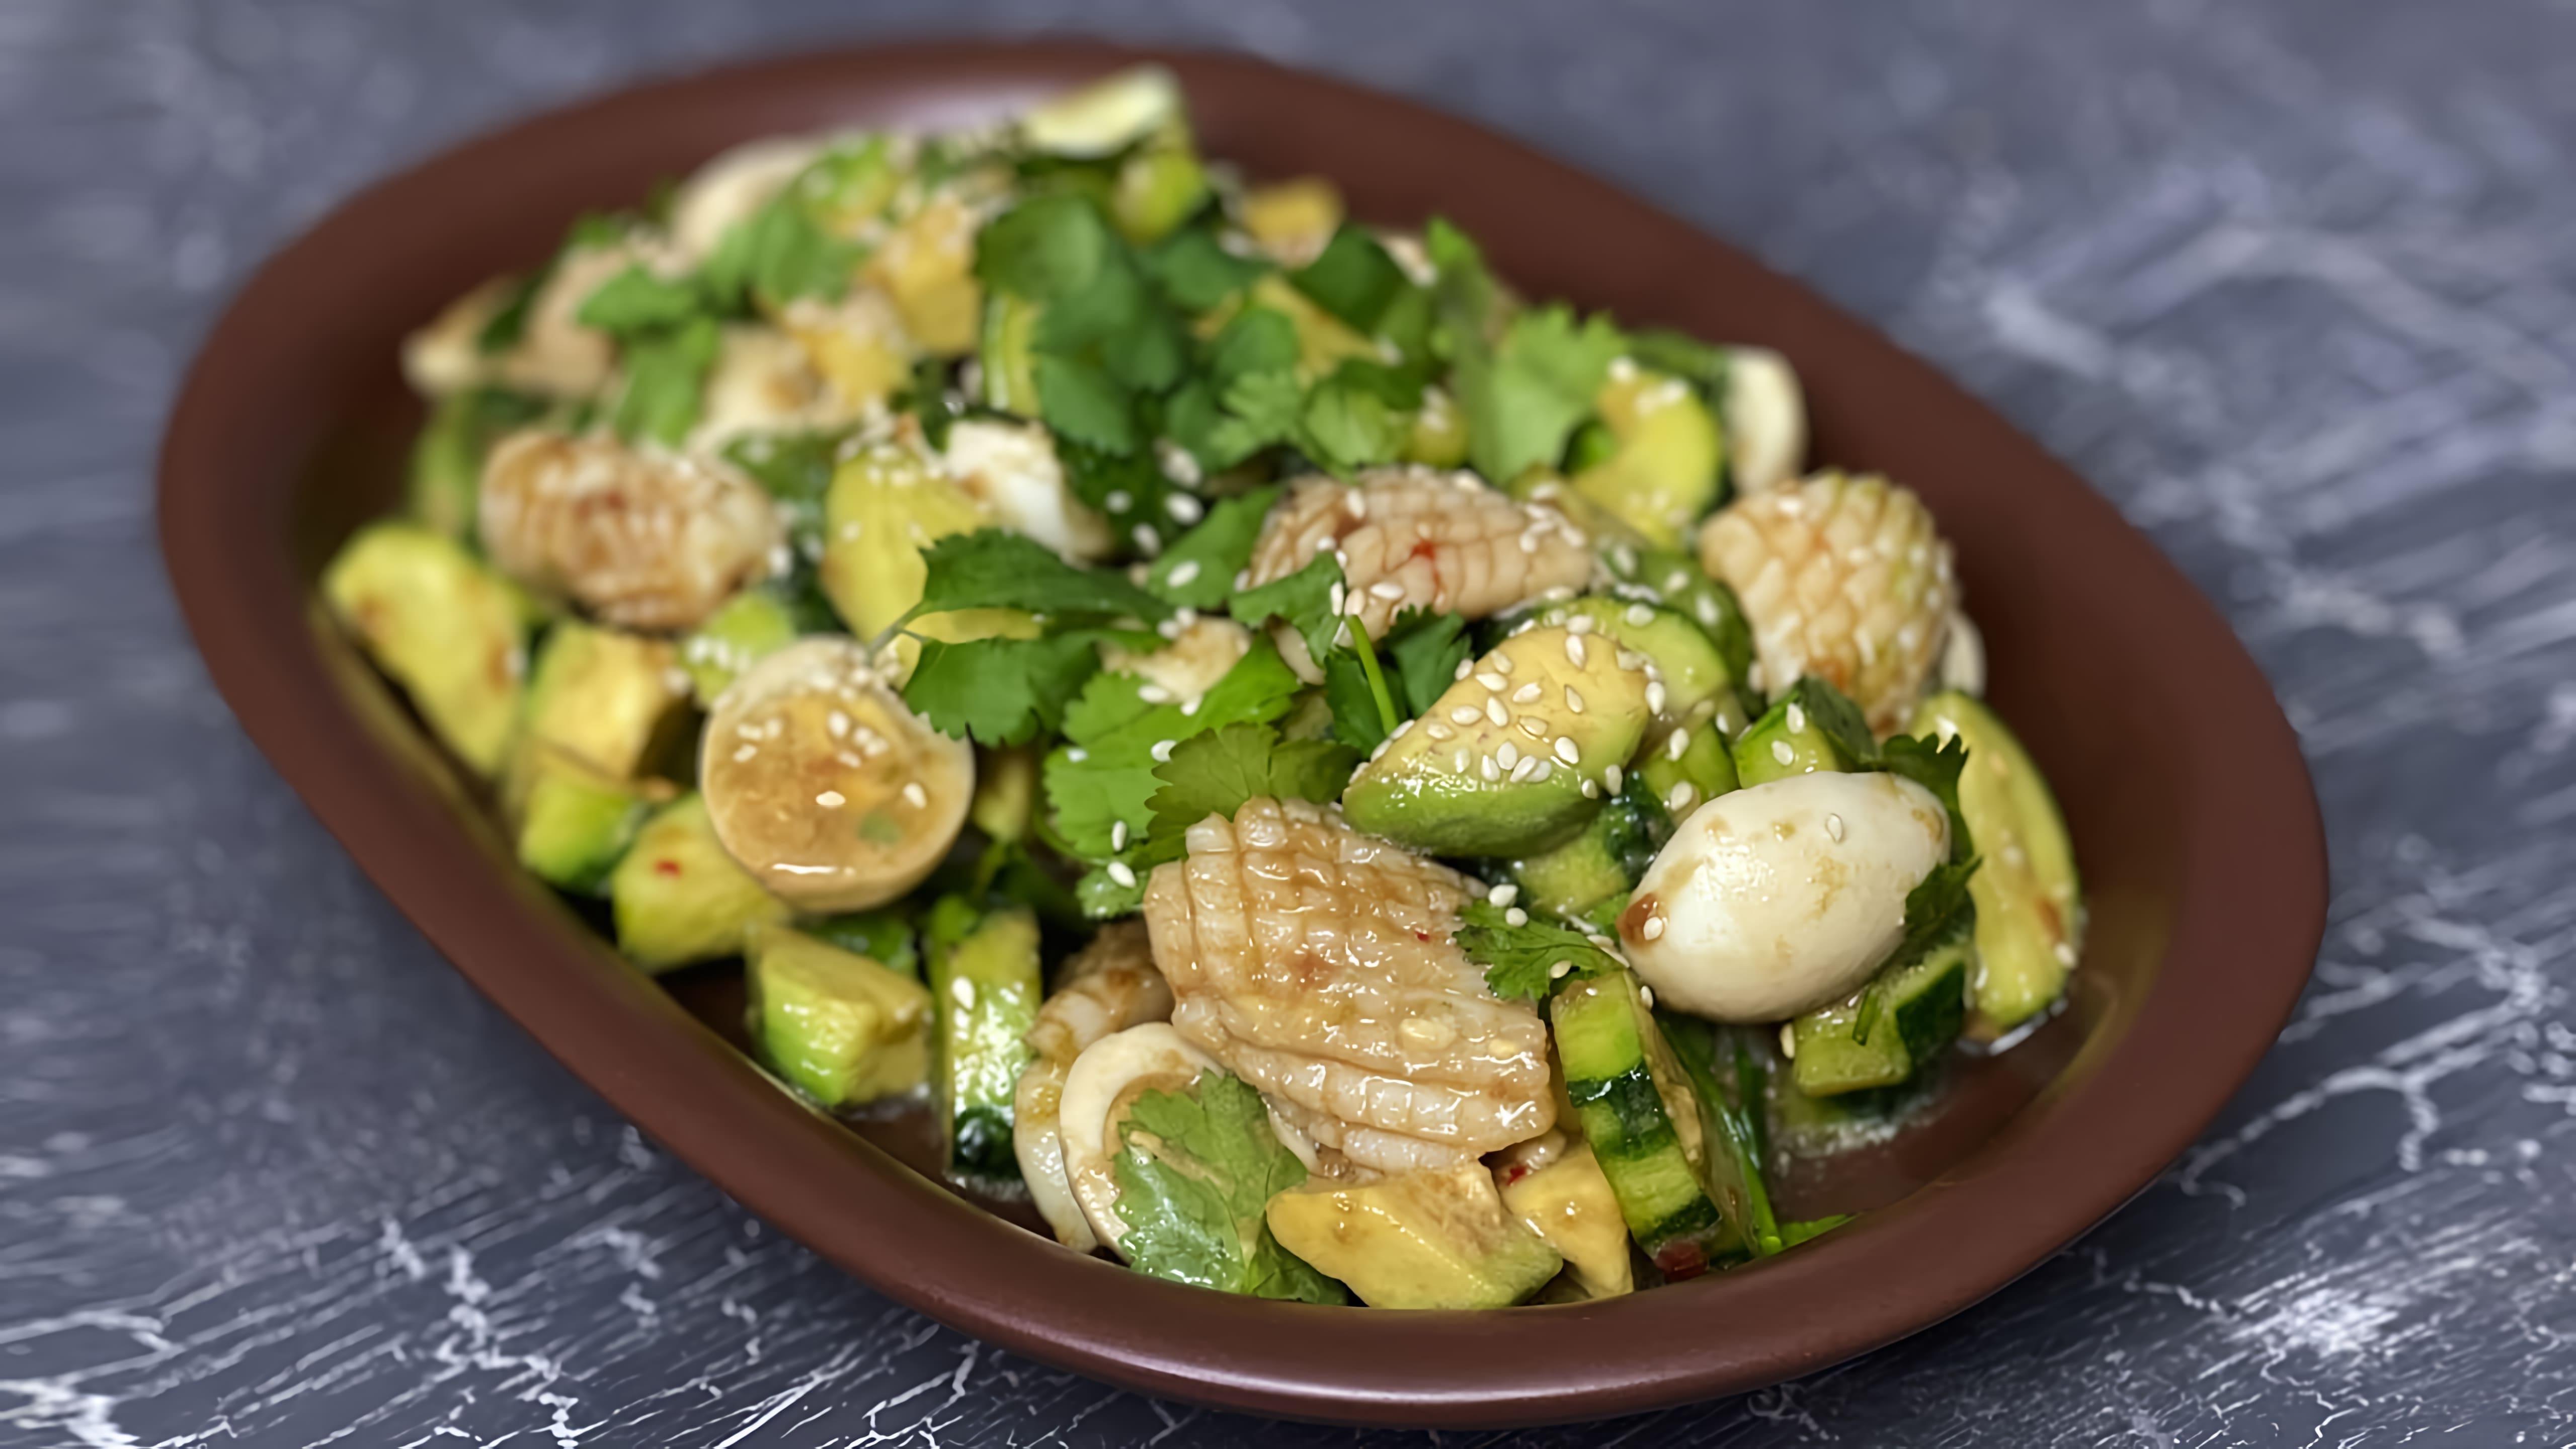 В этом видео демонстрируется рецепт приготовления салата с кальмарами и авокадо